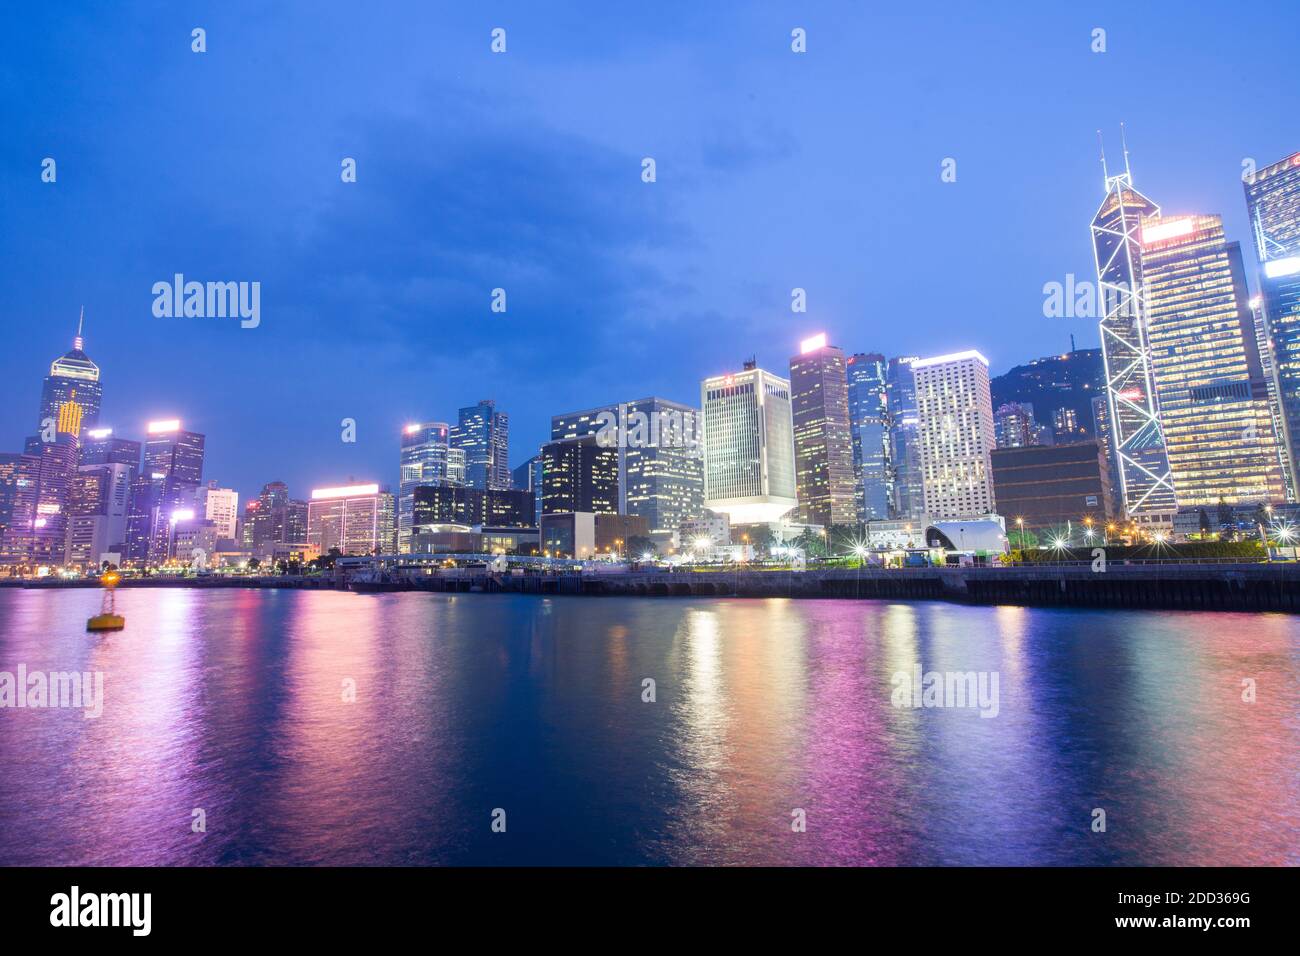 Hong Kong city at night Stock Photo - Alamy